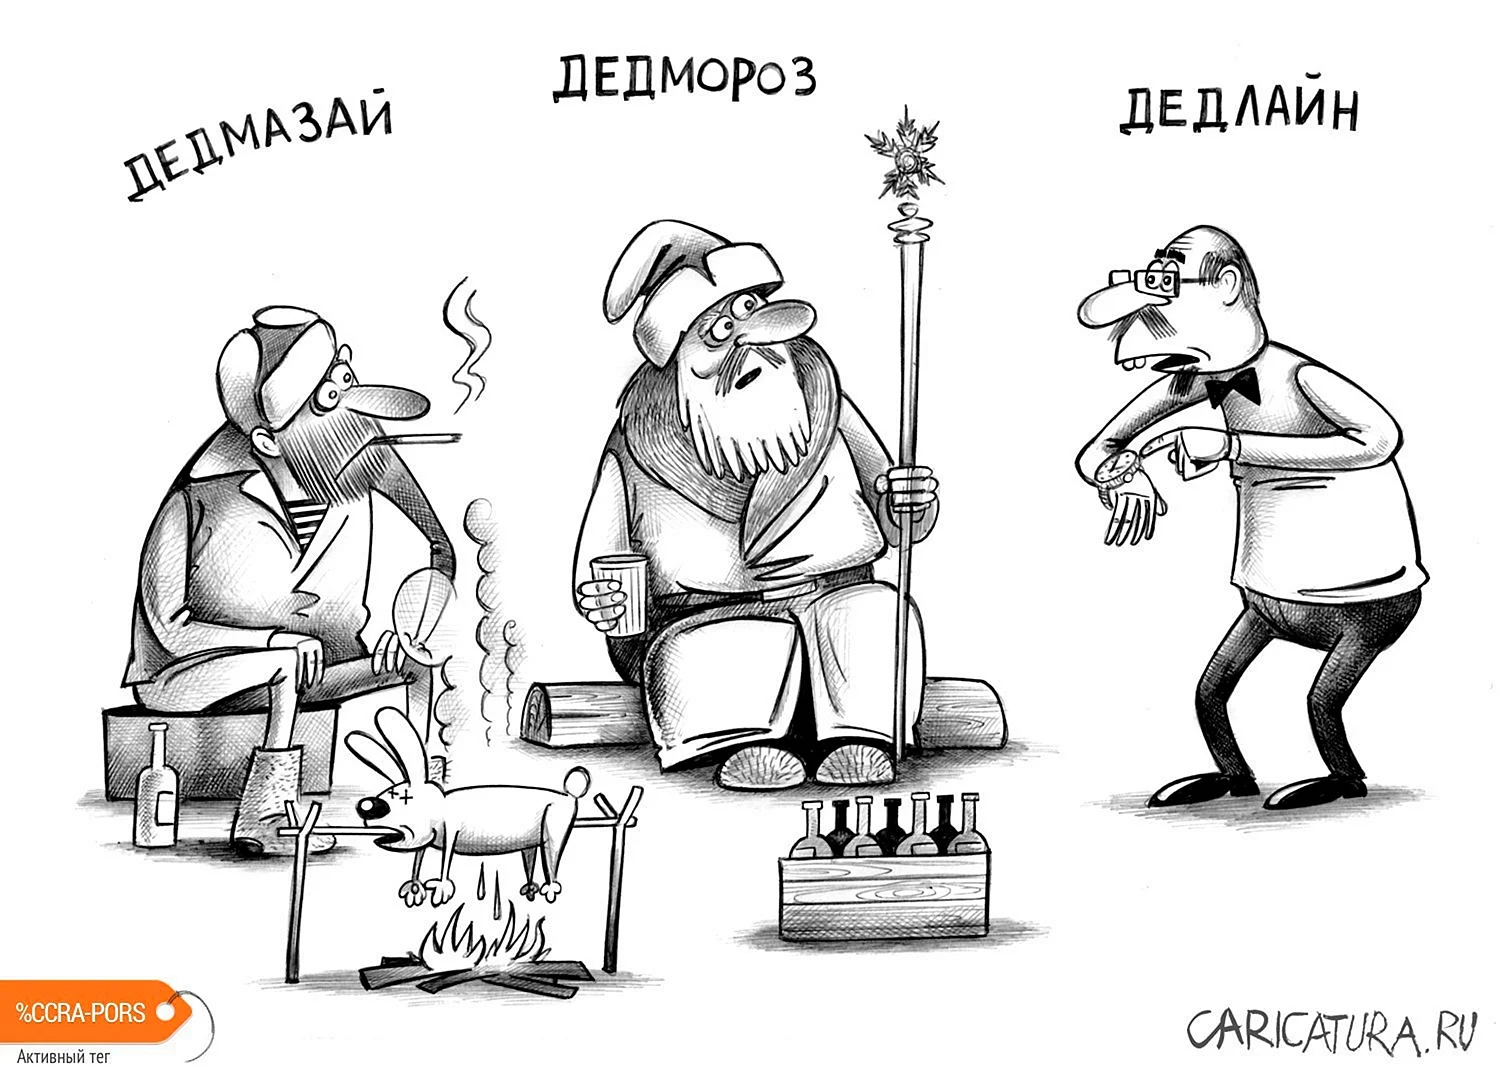 Художник-карикатурист Сергей Корсун